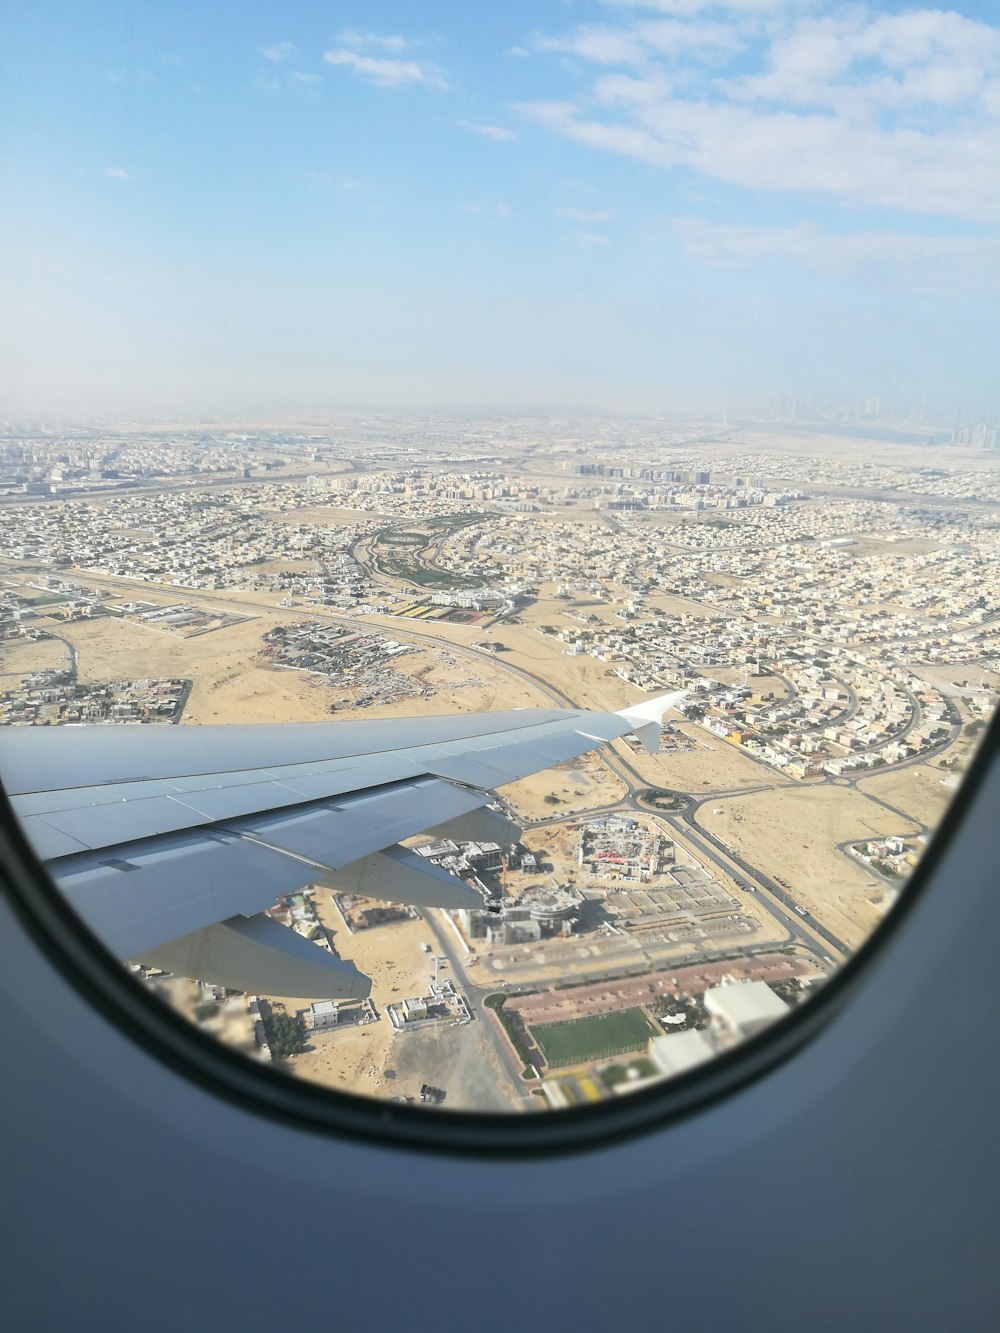 Airplane window view of houses photo – Free Dubai - united arab emirates  Image on Unsplash